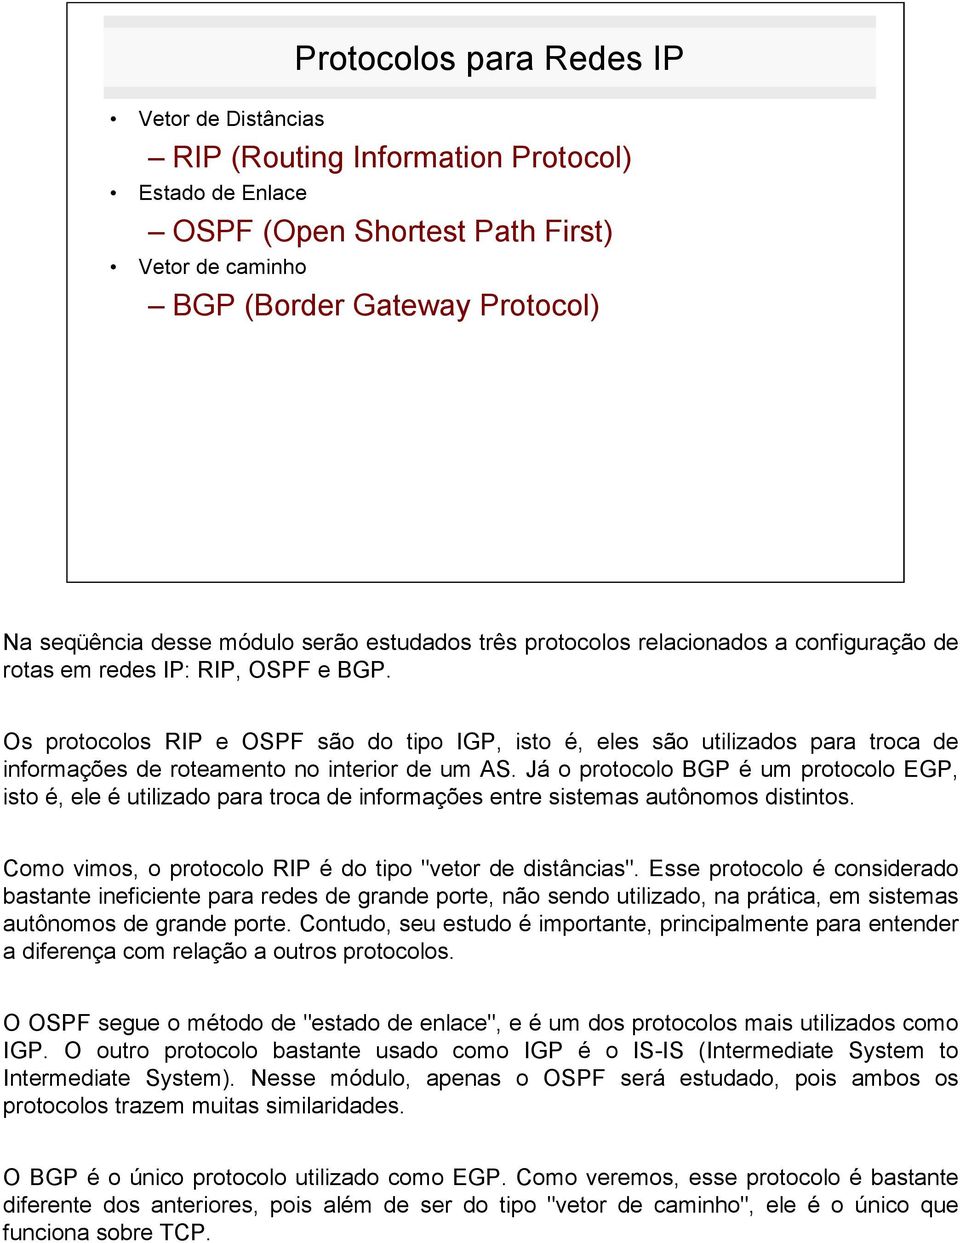 Os protocolos RIP e OSPF são do tipo IGP, isto é, eles são utilizados para troca de informações de roteamento no interior de um AS.